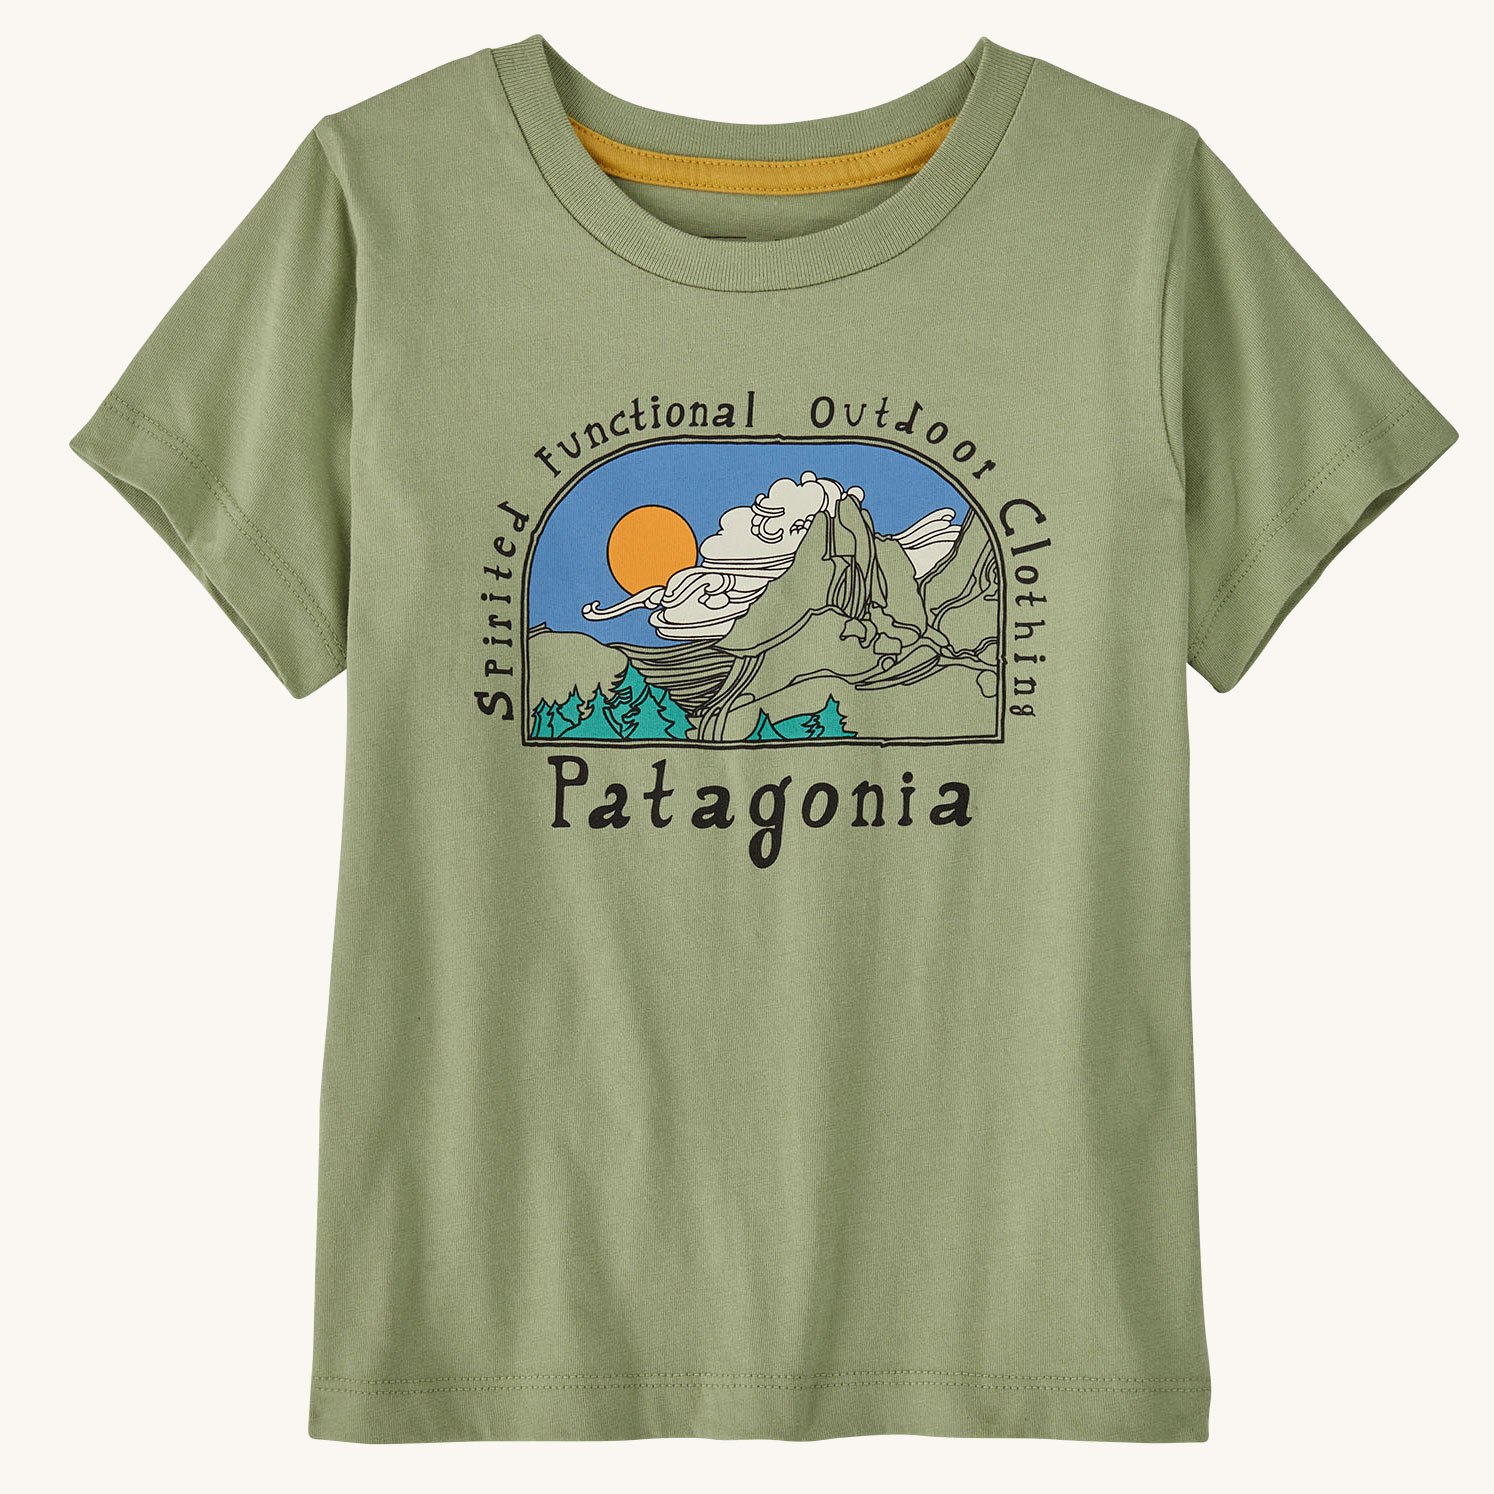 Patagonia Kids' Clothing